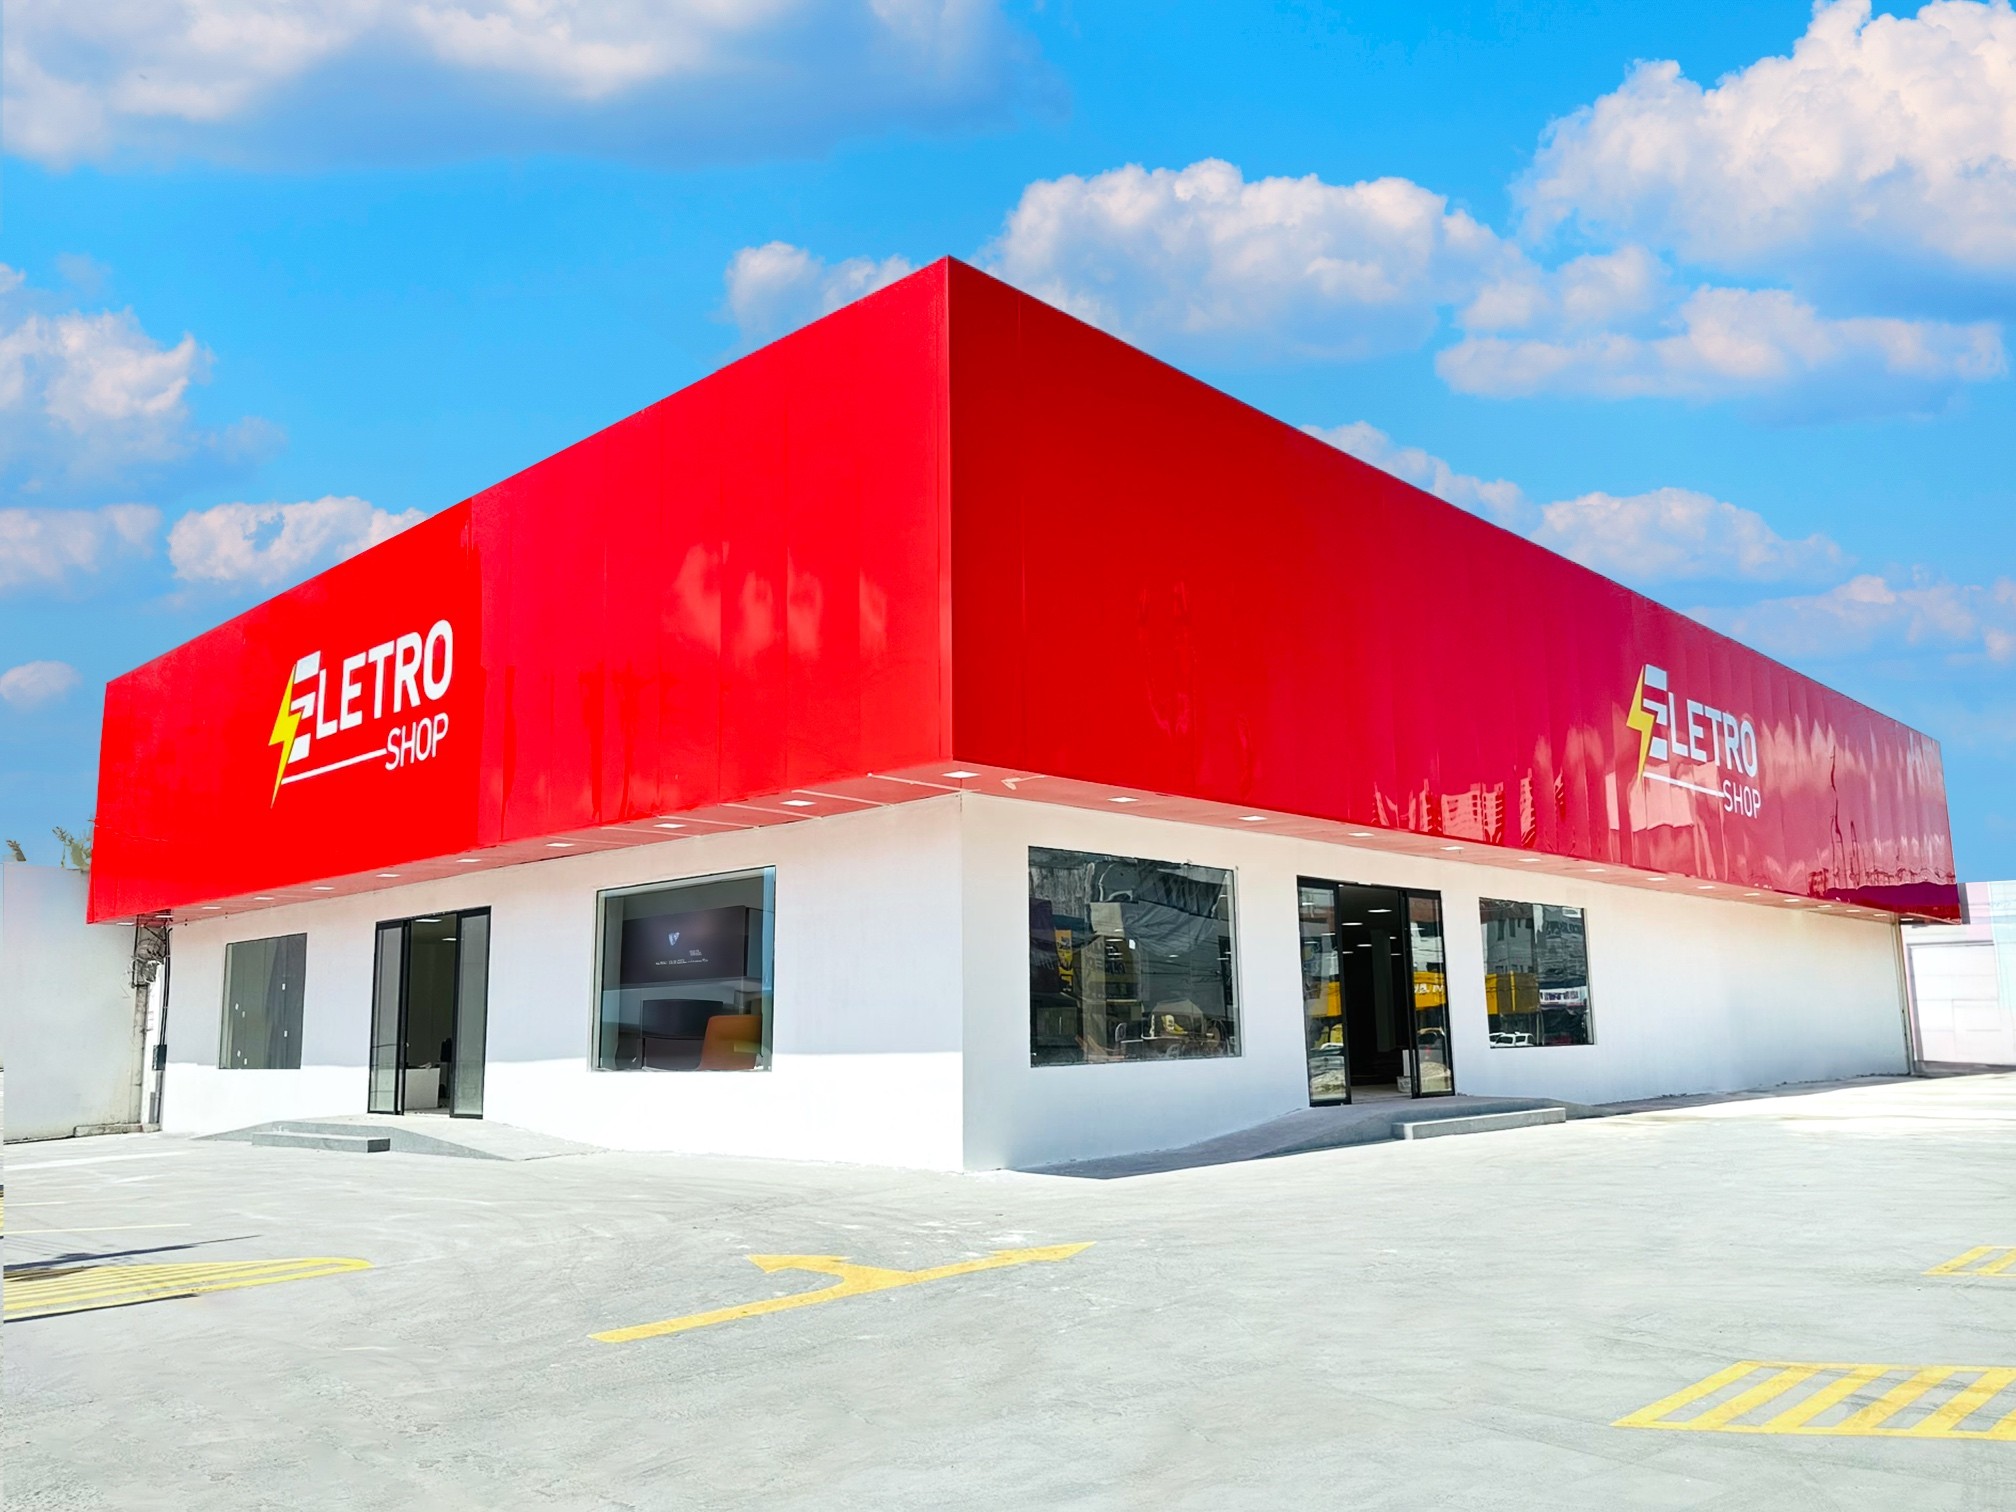 Entre as gigantes: Eletro Shop inaugura 5ª unidade no centro de Macapá